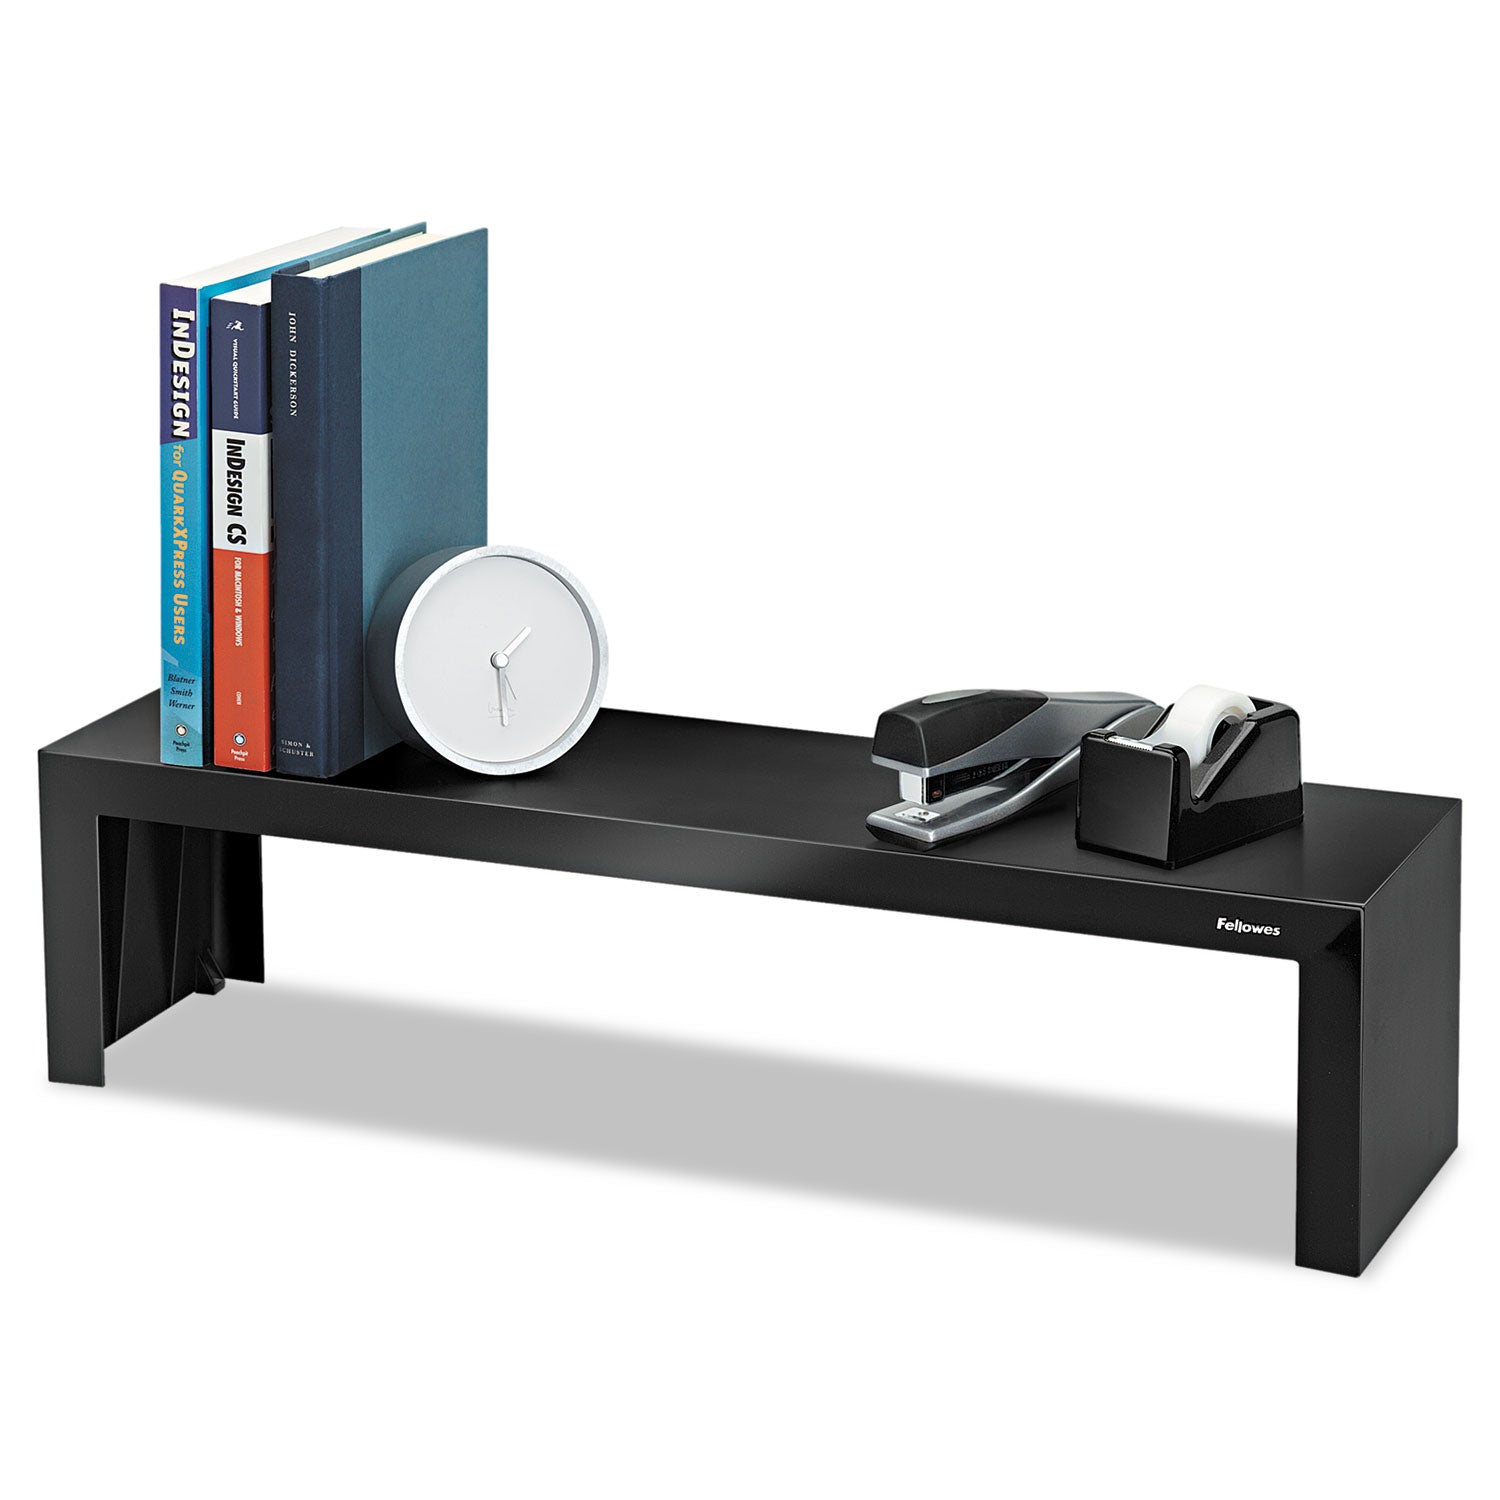 Designer Suites Shelf, 30 lb Capacity, 26 x 7 x 6.75, Black Pearl - 